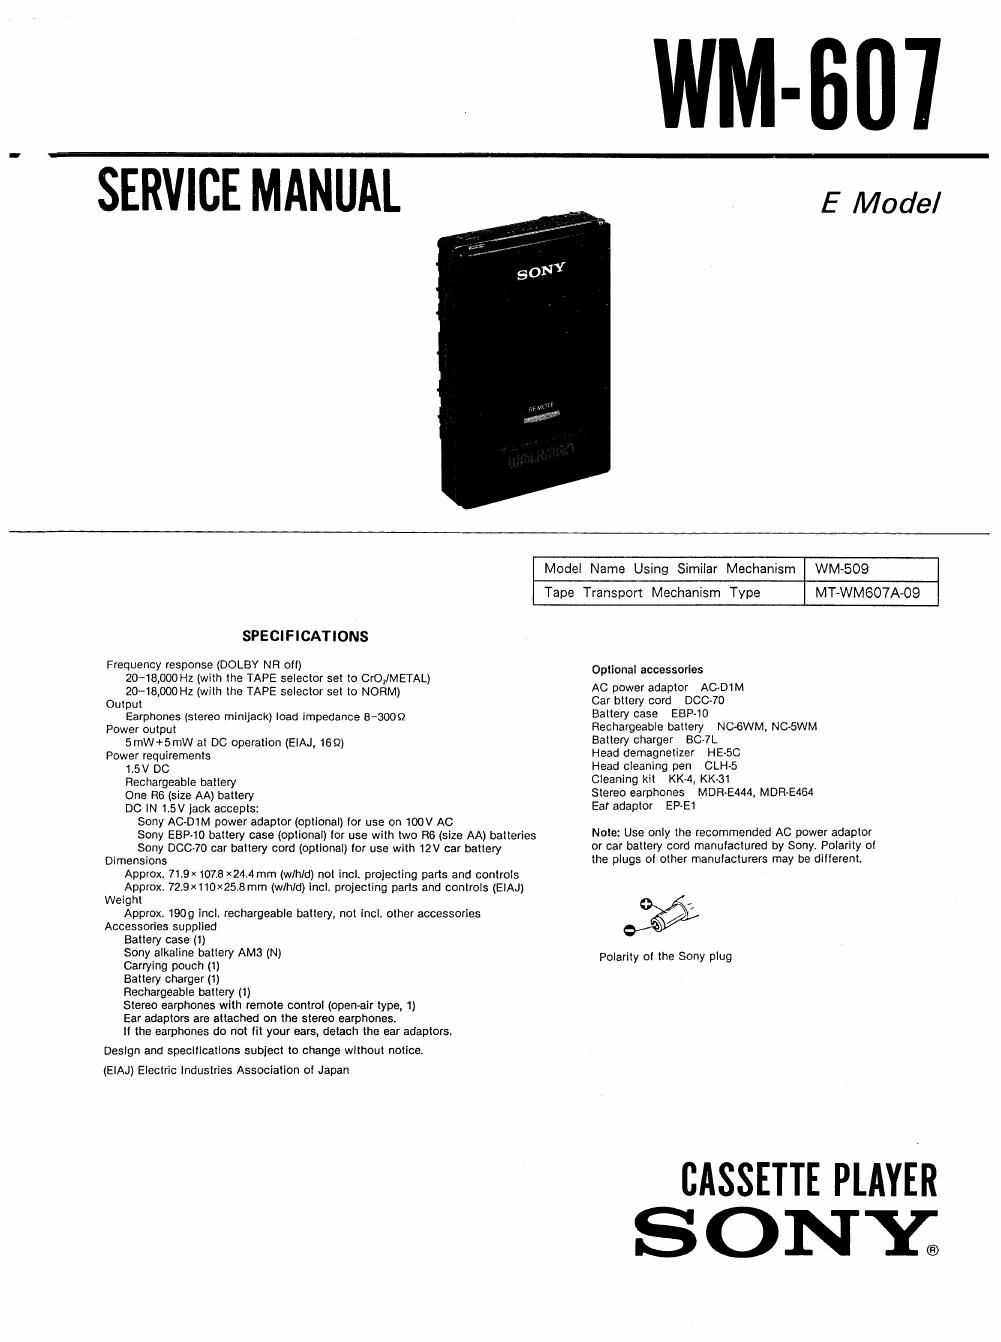 sony wm 607 service manual